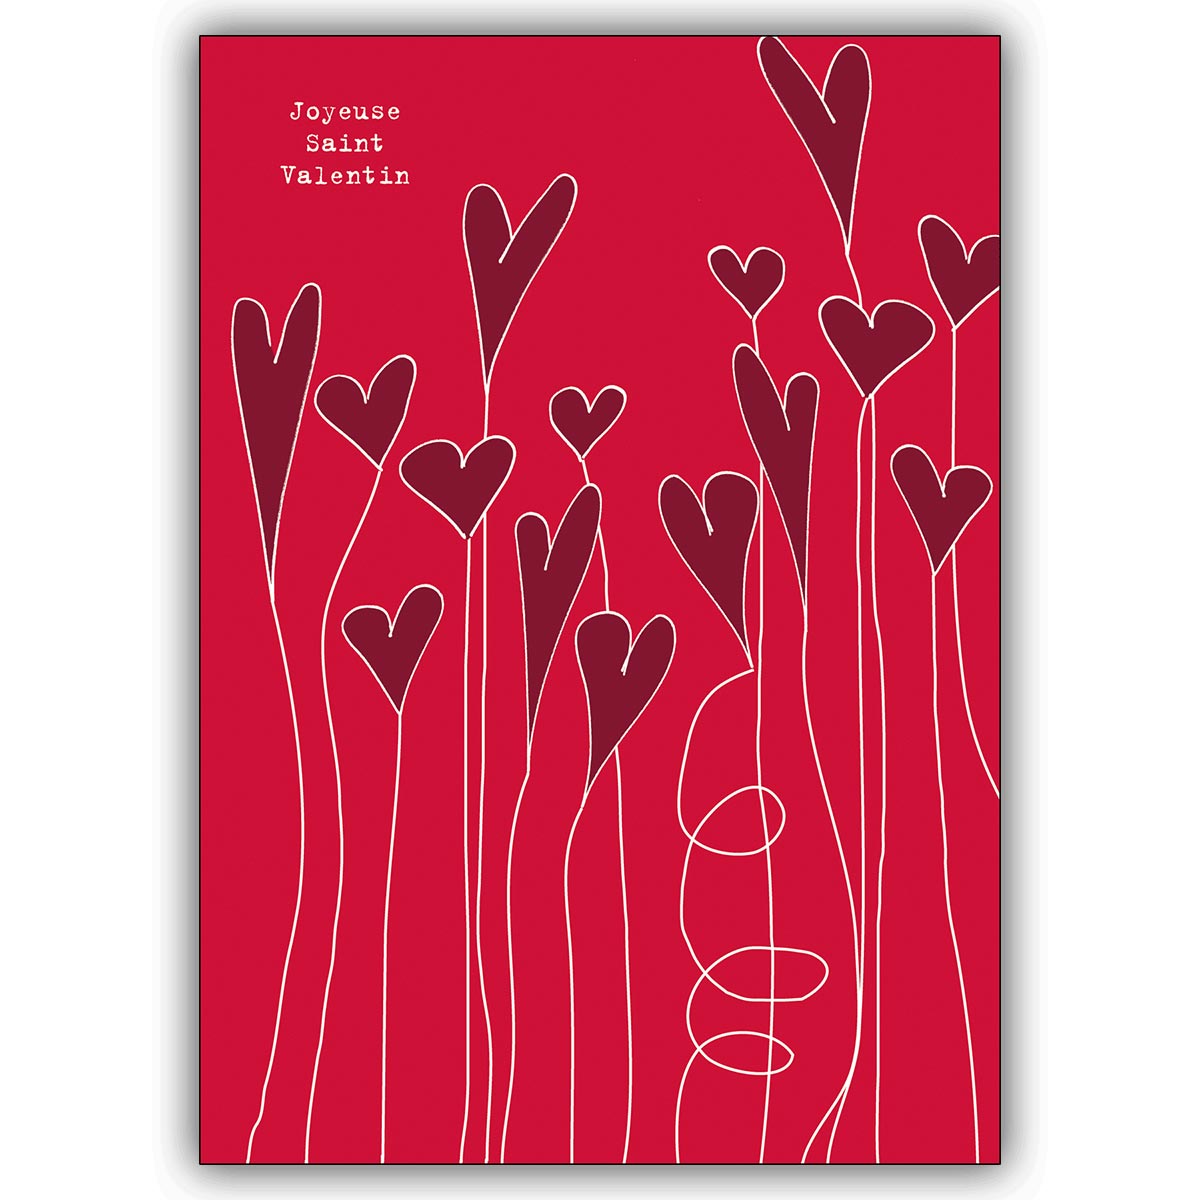 Französische Liebeskarte mit fliegenden Herzen: Joyeuse Saint Valentin!